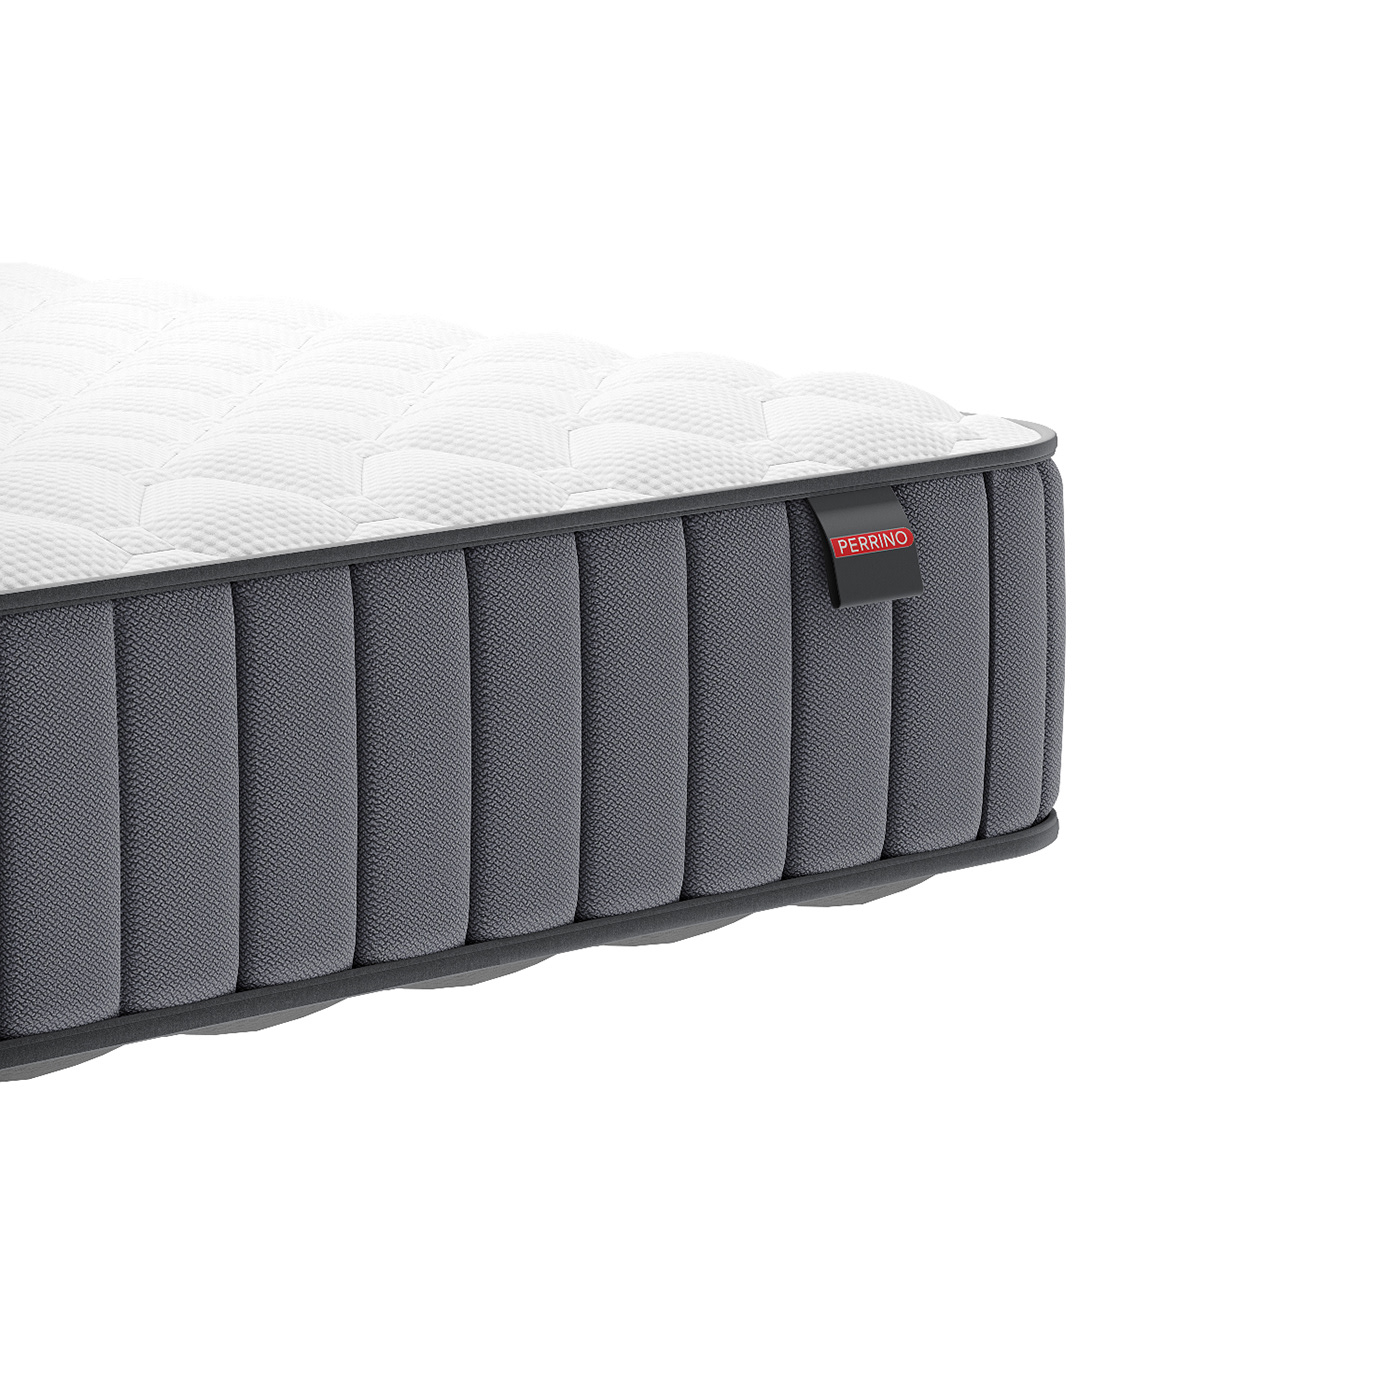 3ds max bed Best Memory Foam Matras memory foam mattress pillow sleeping pillow visualization Матрас